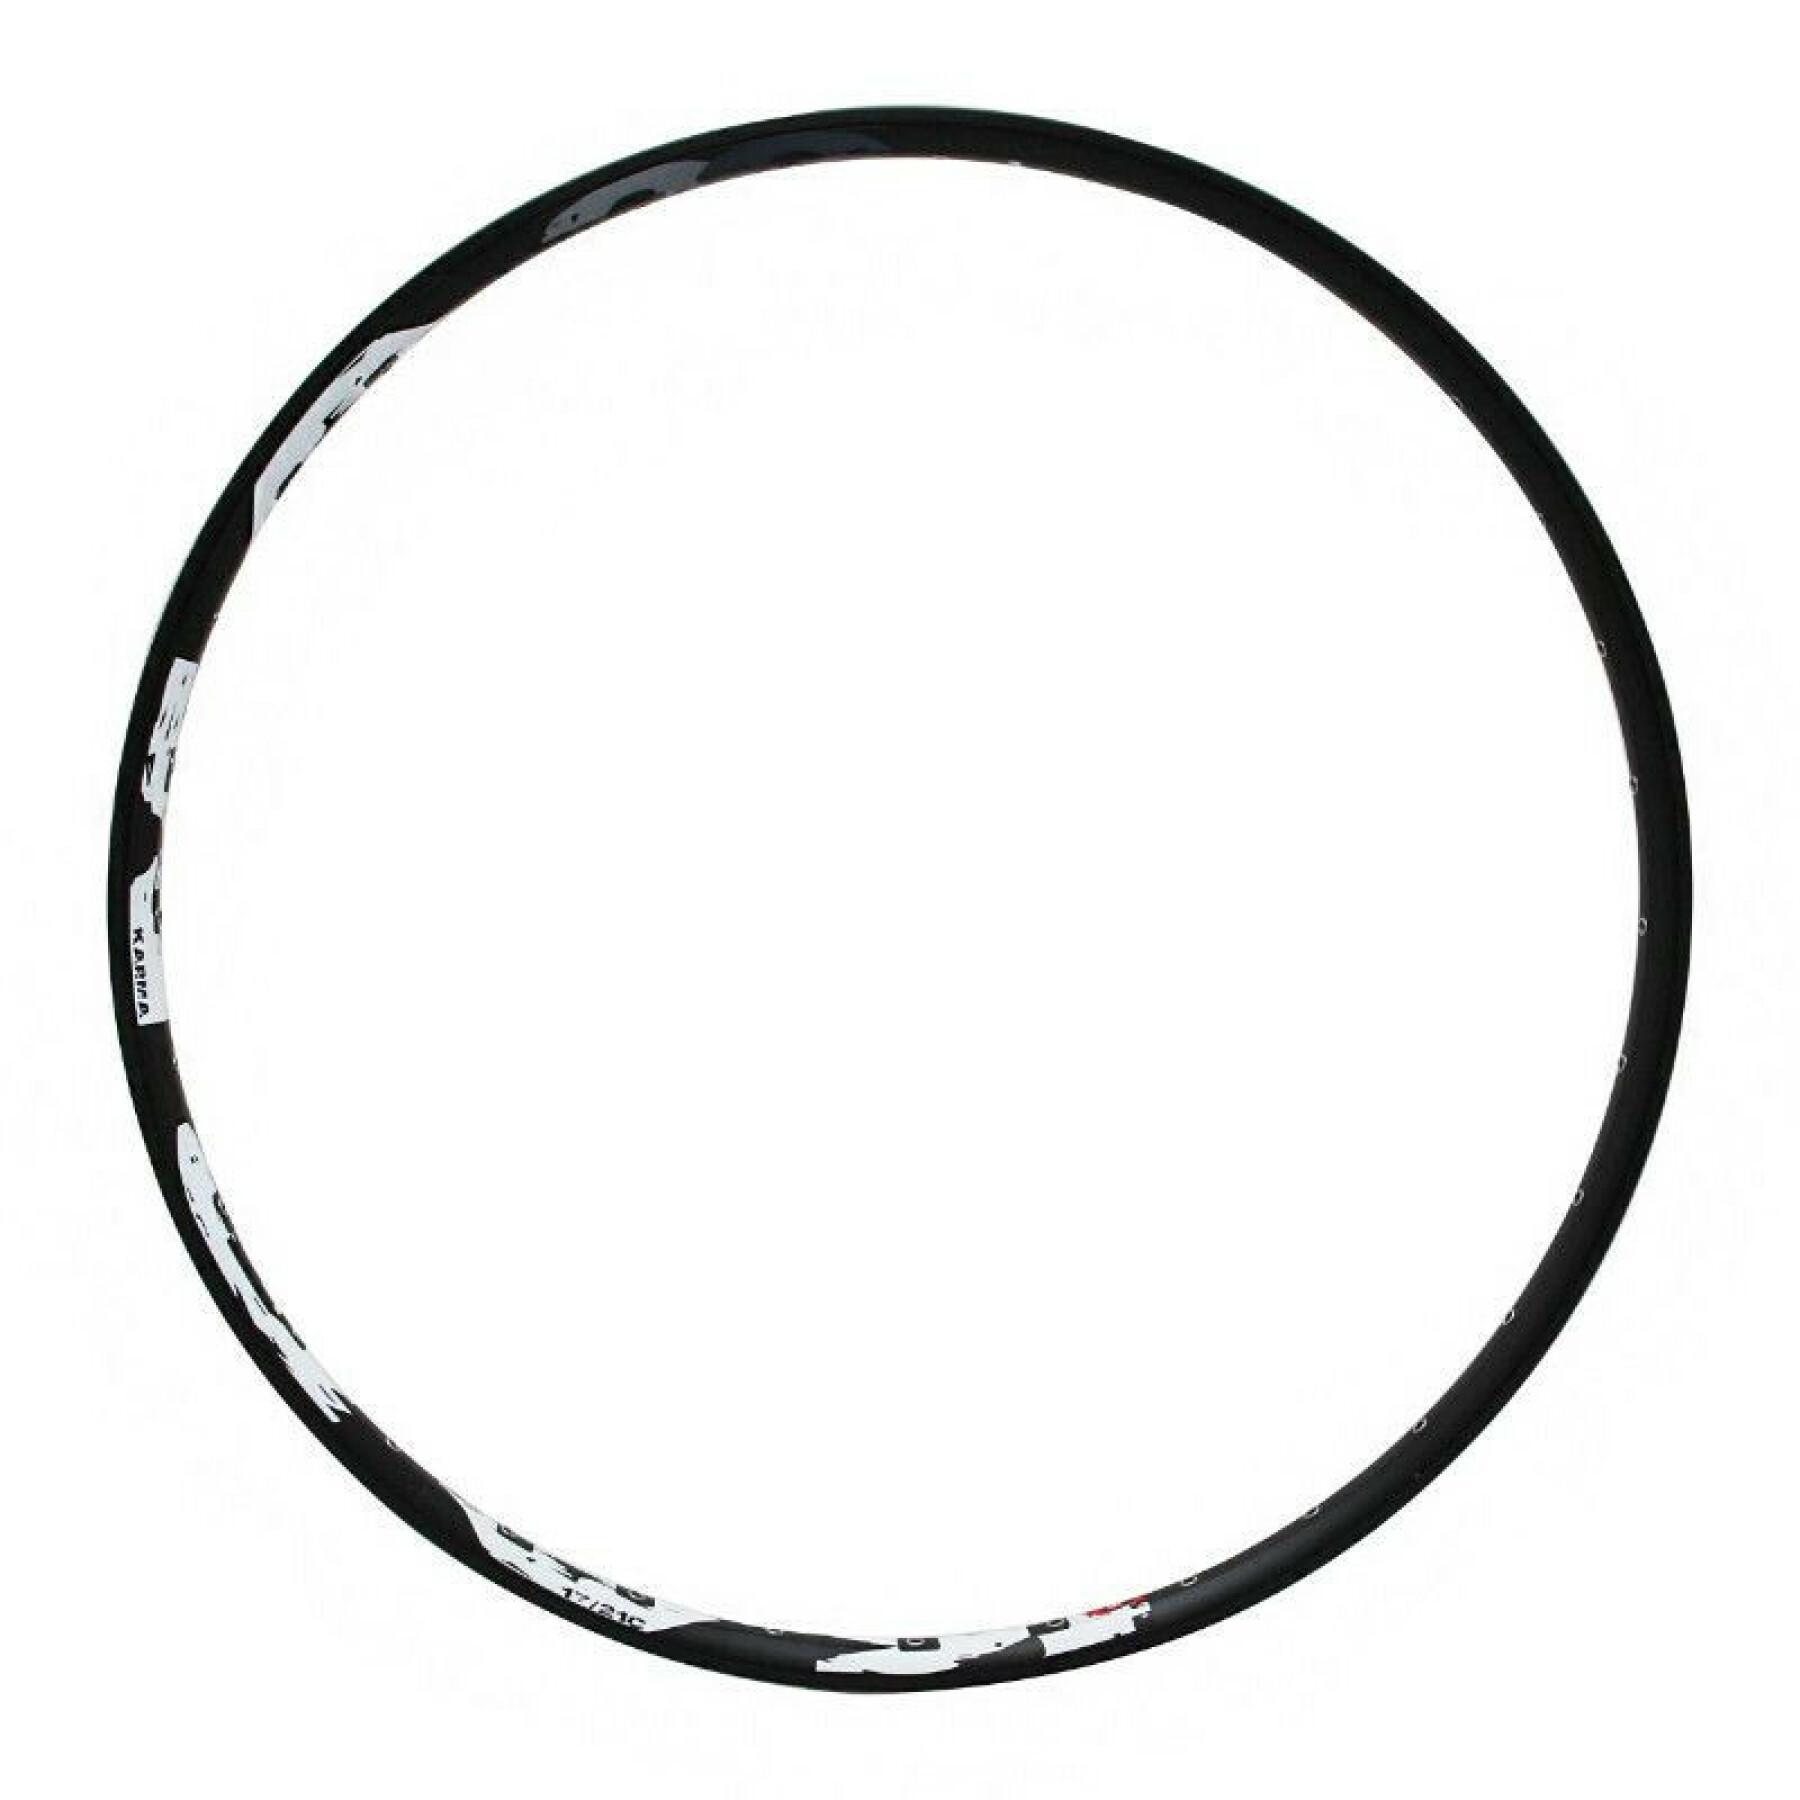 Cerchio a doppia parete con occhielli a profilo da 17 mm Velox Karma disc 21c 32t.